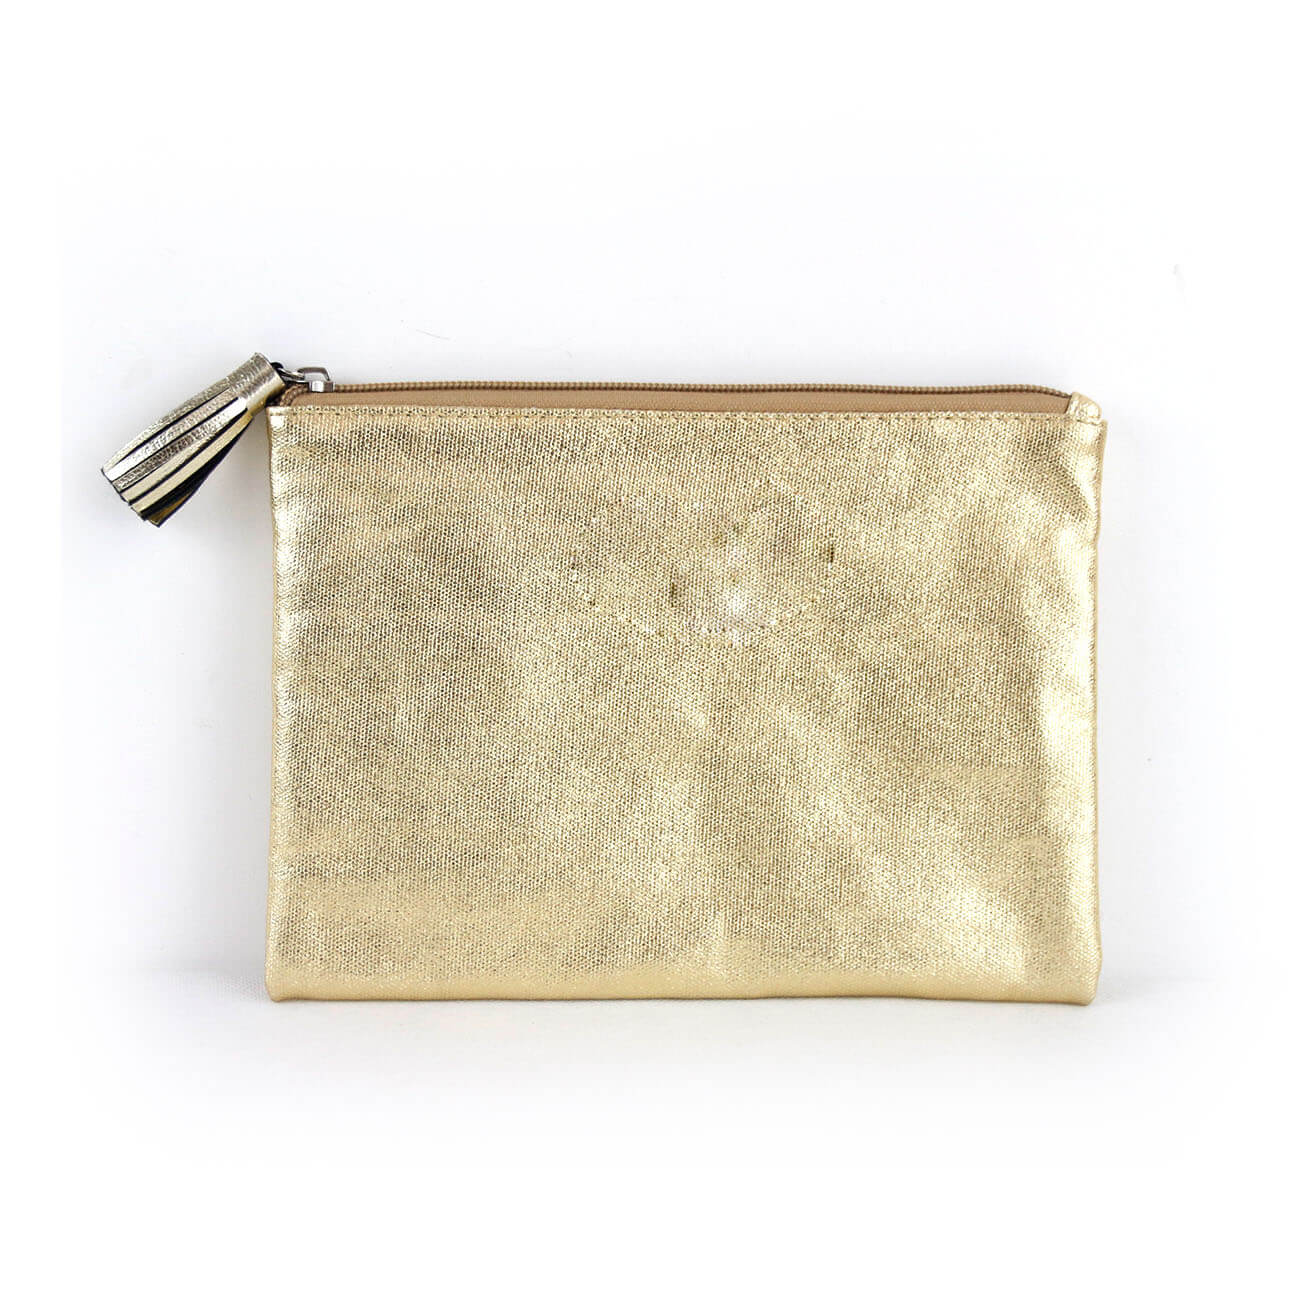 Laminated Gold Canvas Make up Bag